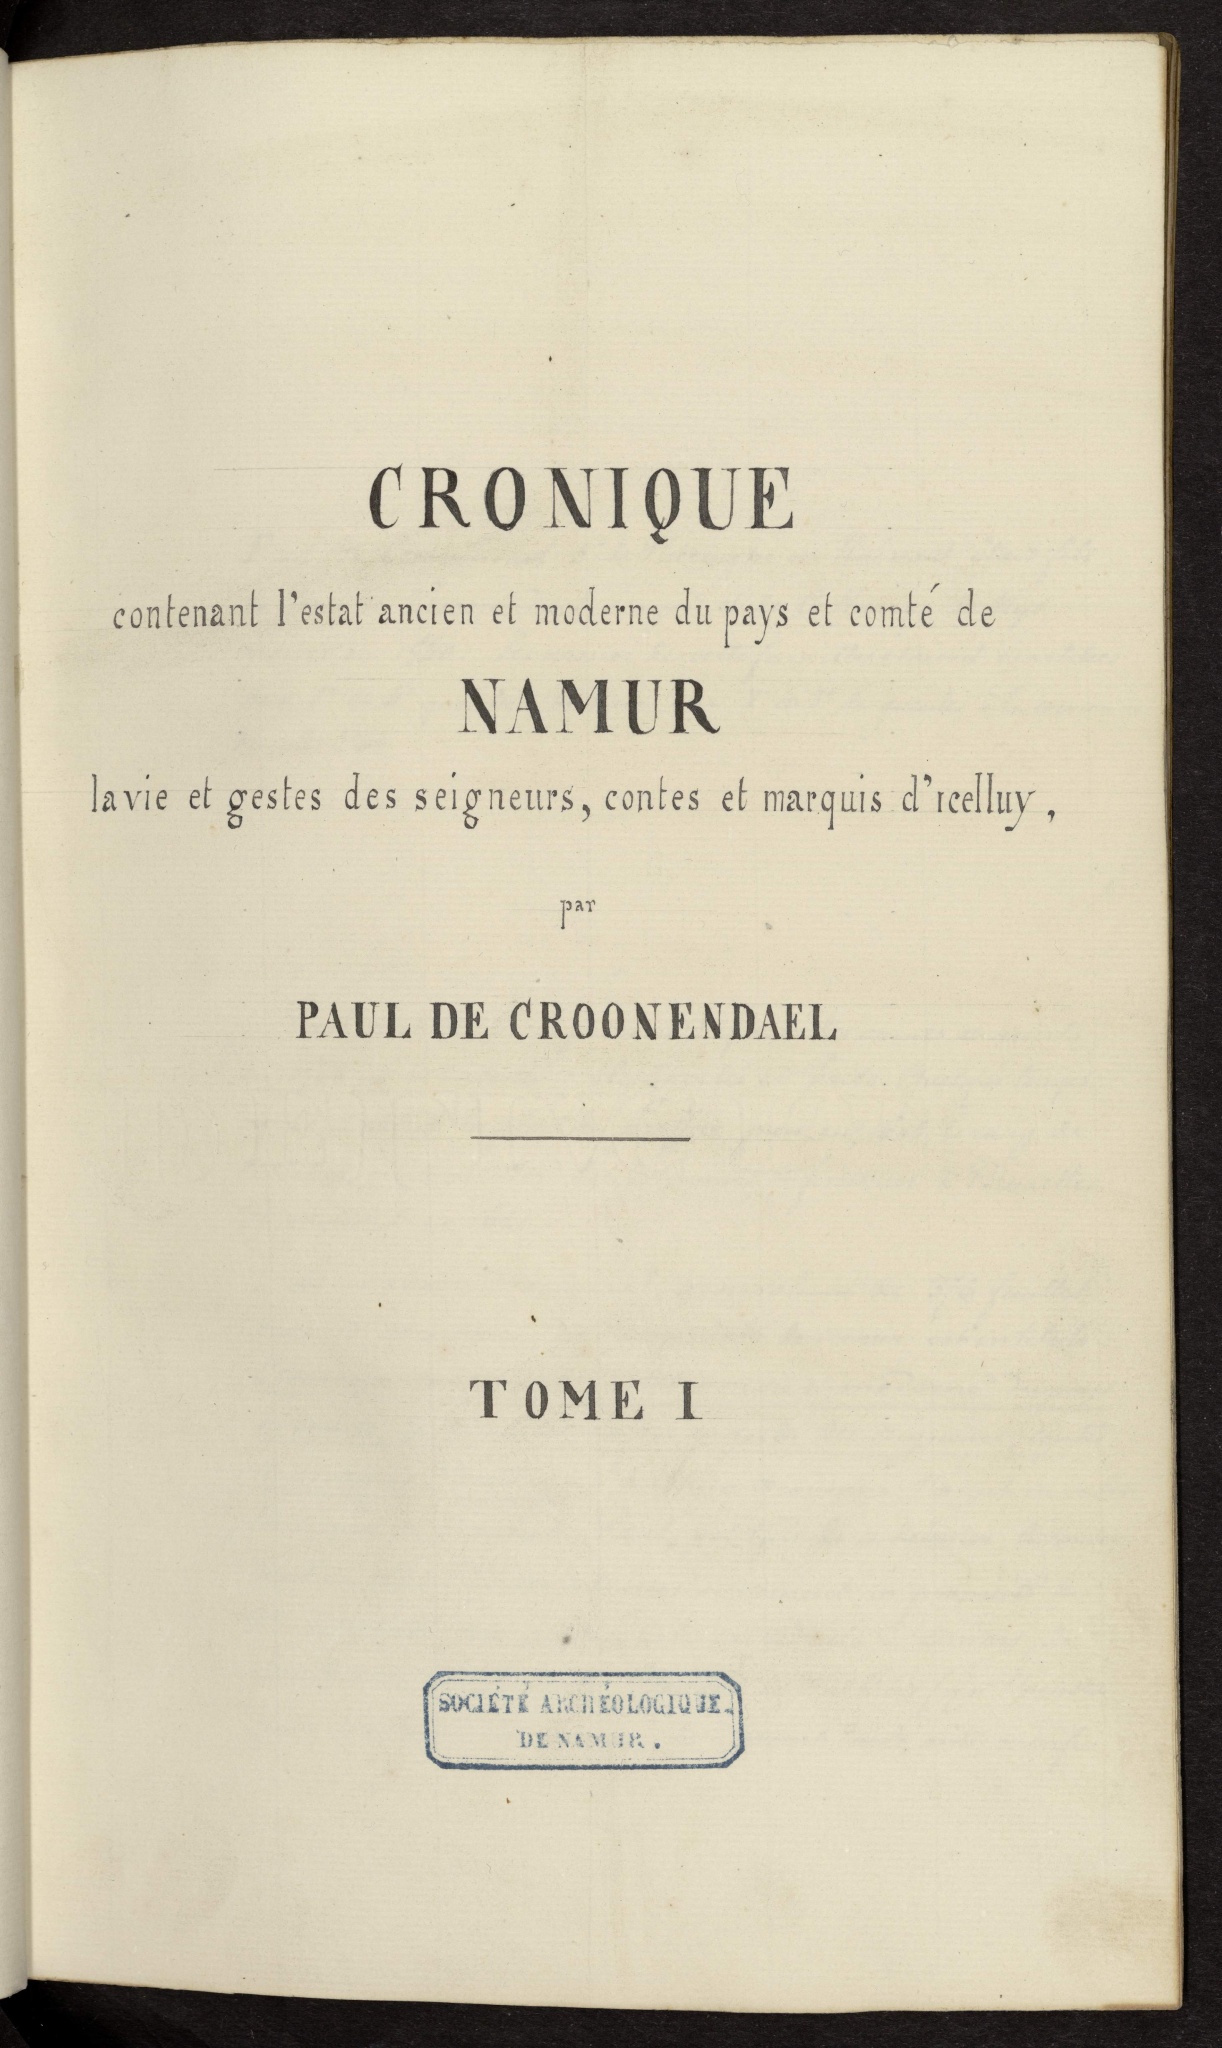 Chronique du Pays et comté de Namur. Vol. I